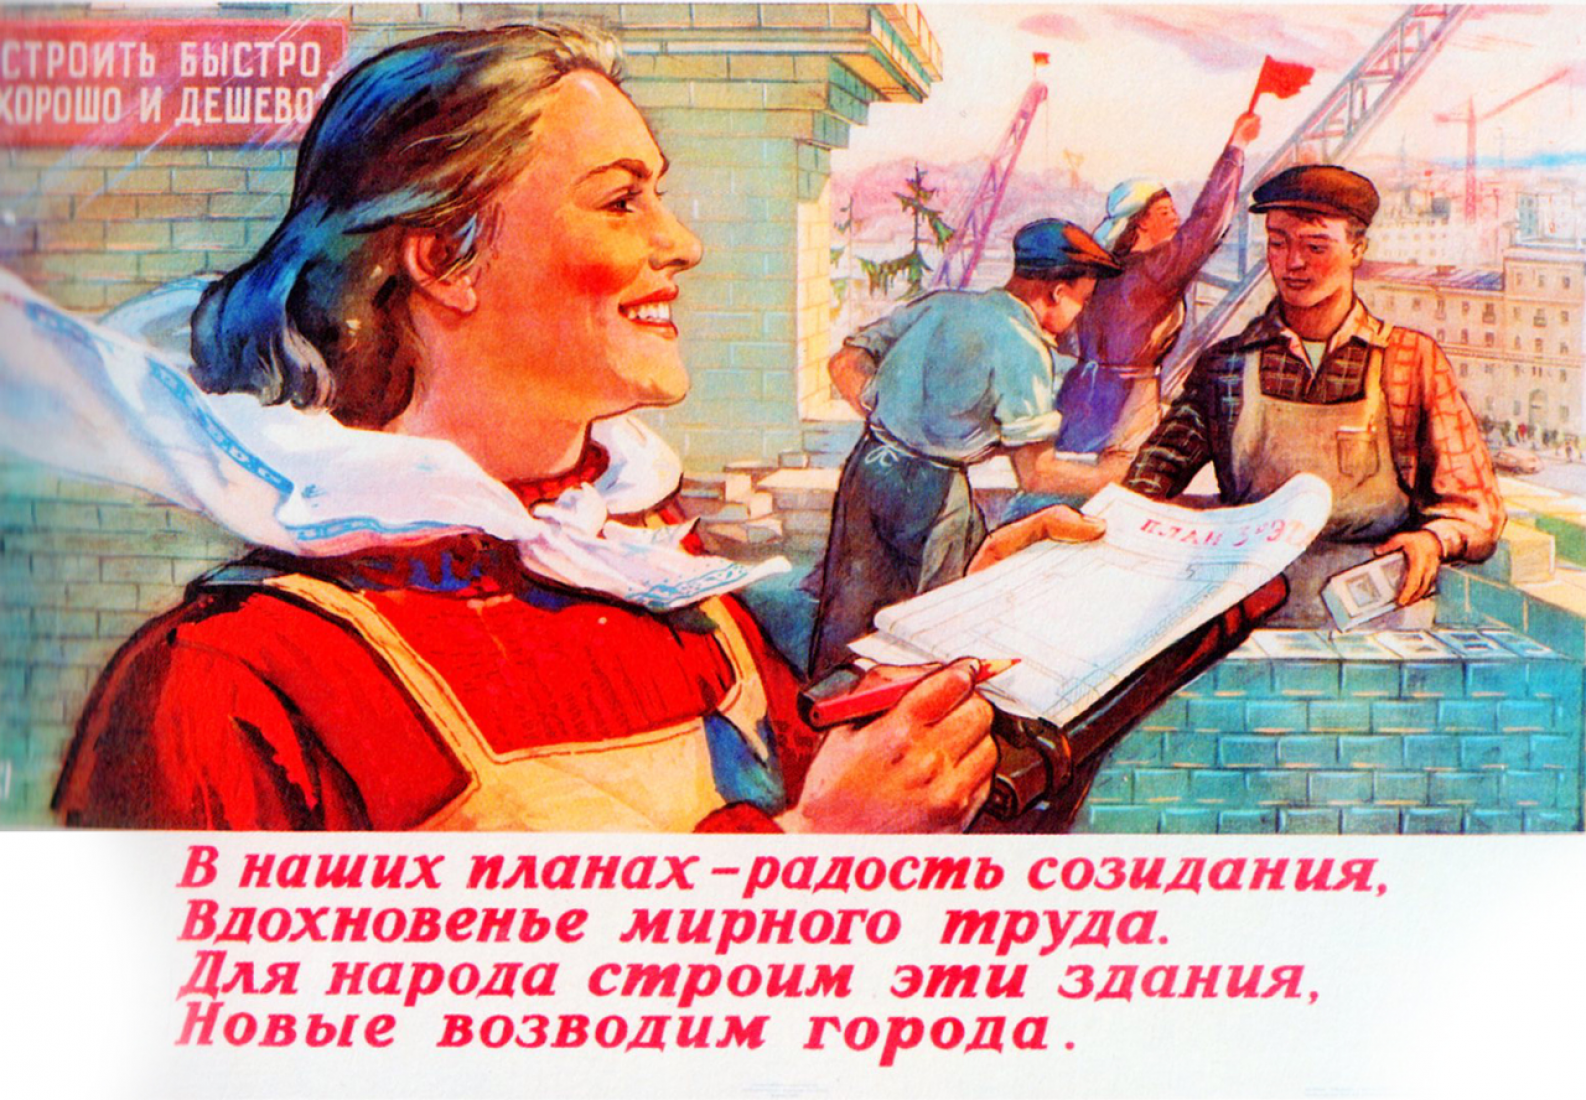 Resultado de imagen de carteles sovieticos